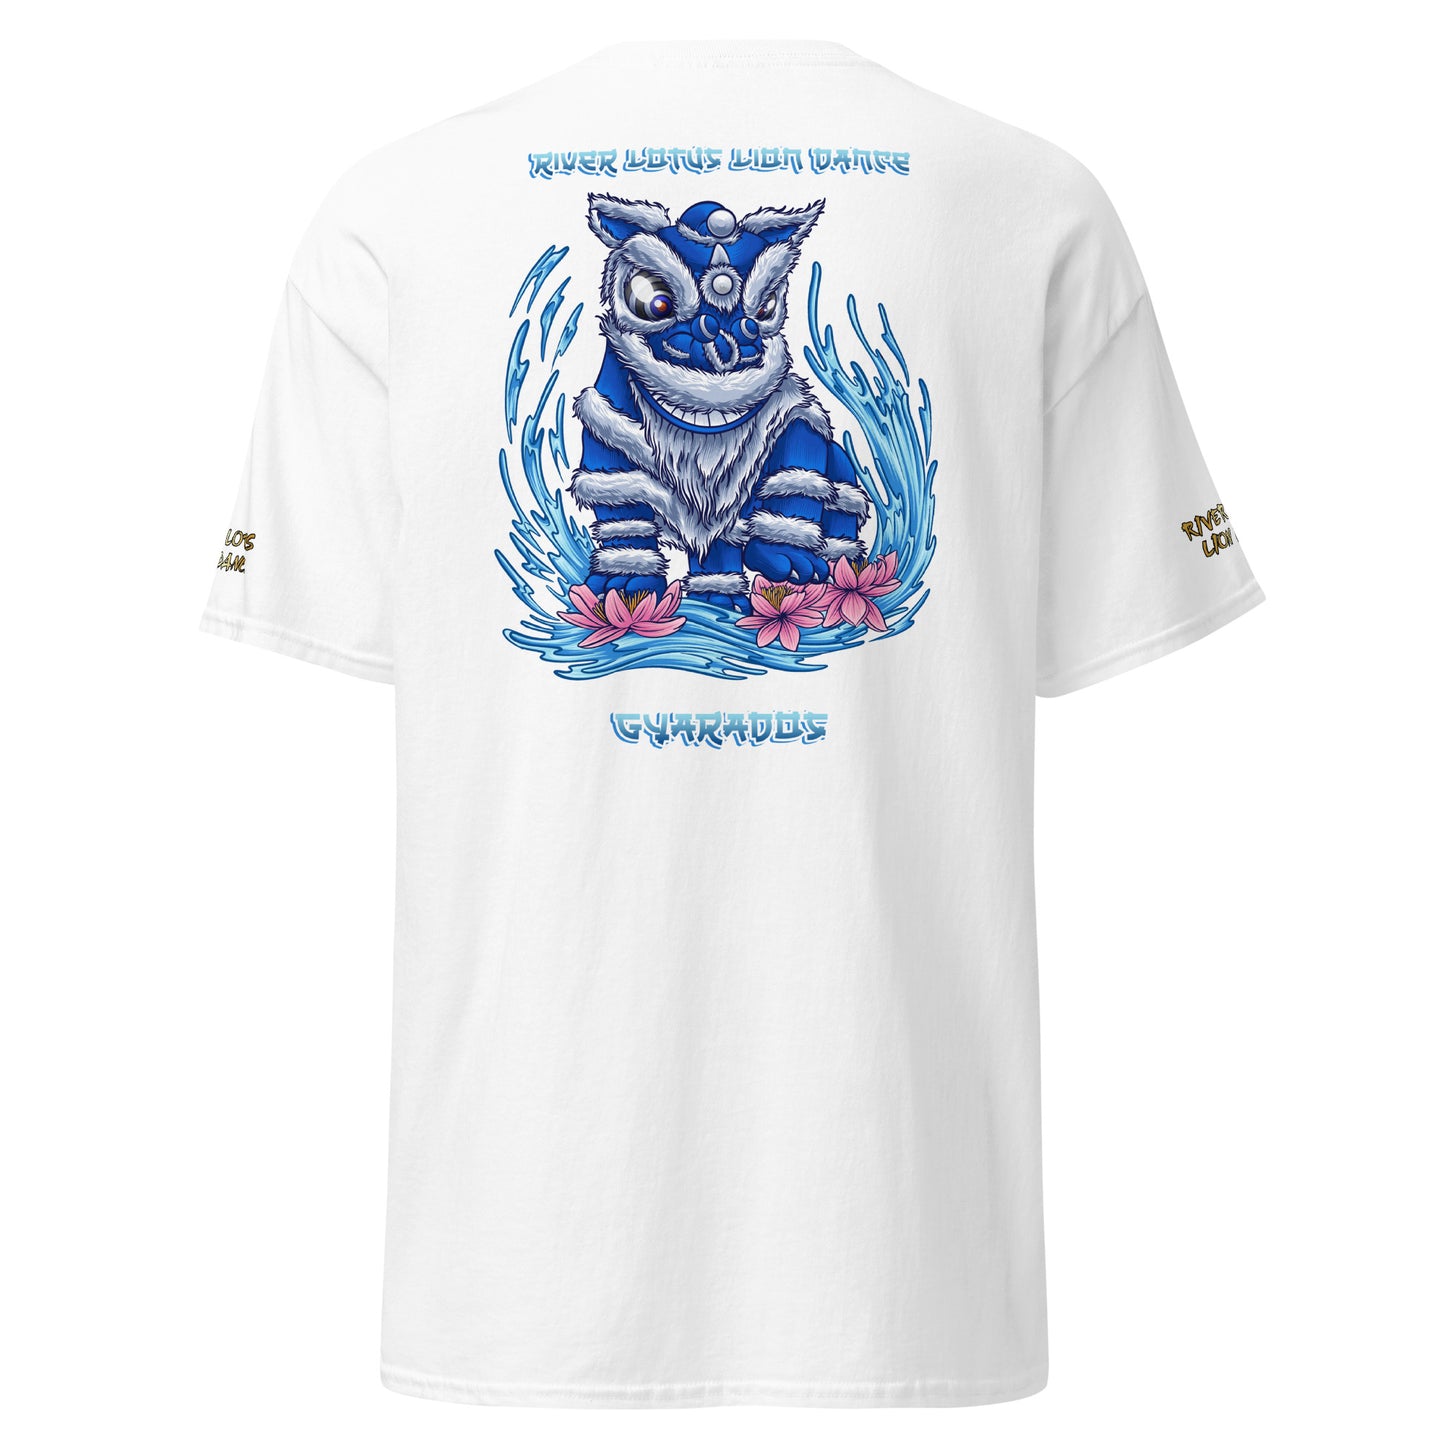 Gyarados Lion T-shirt